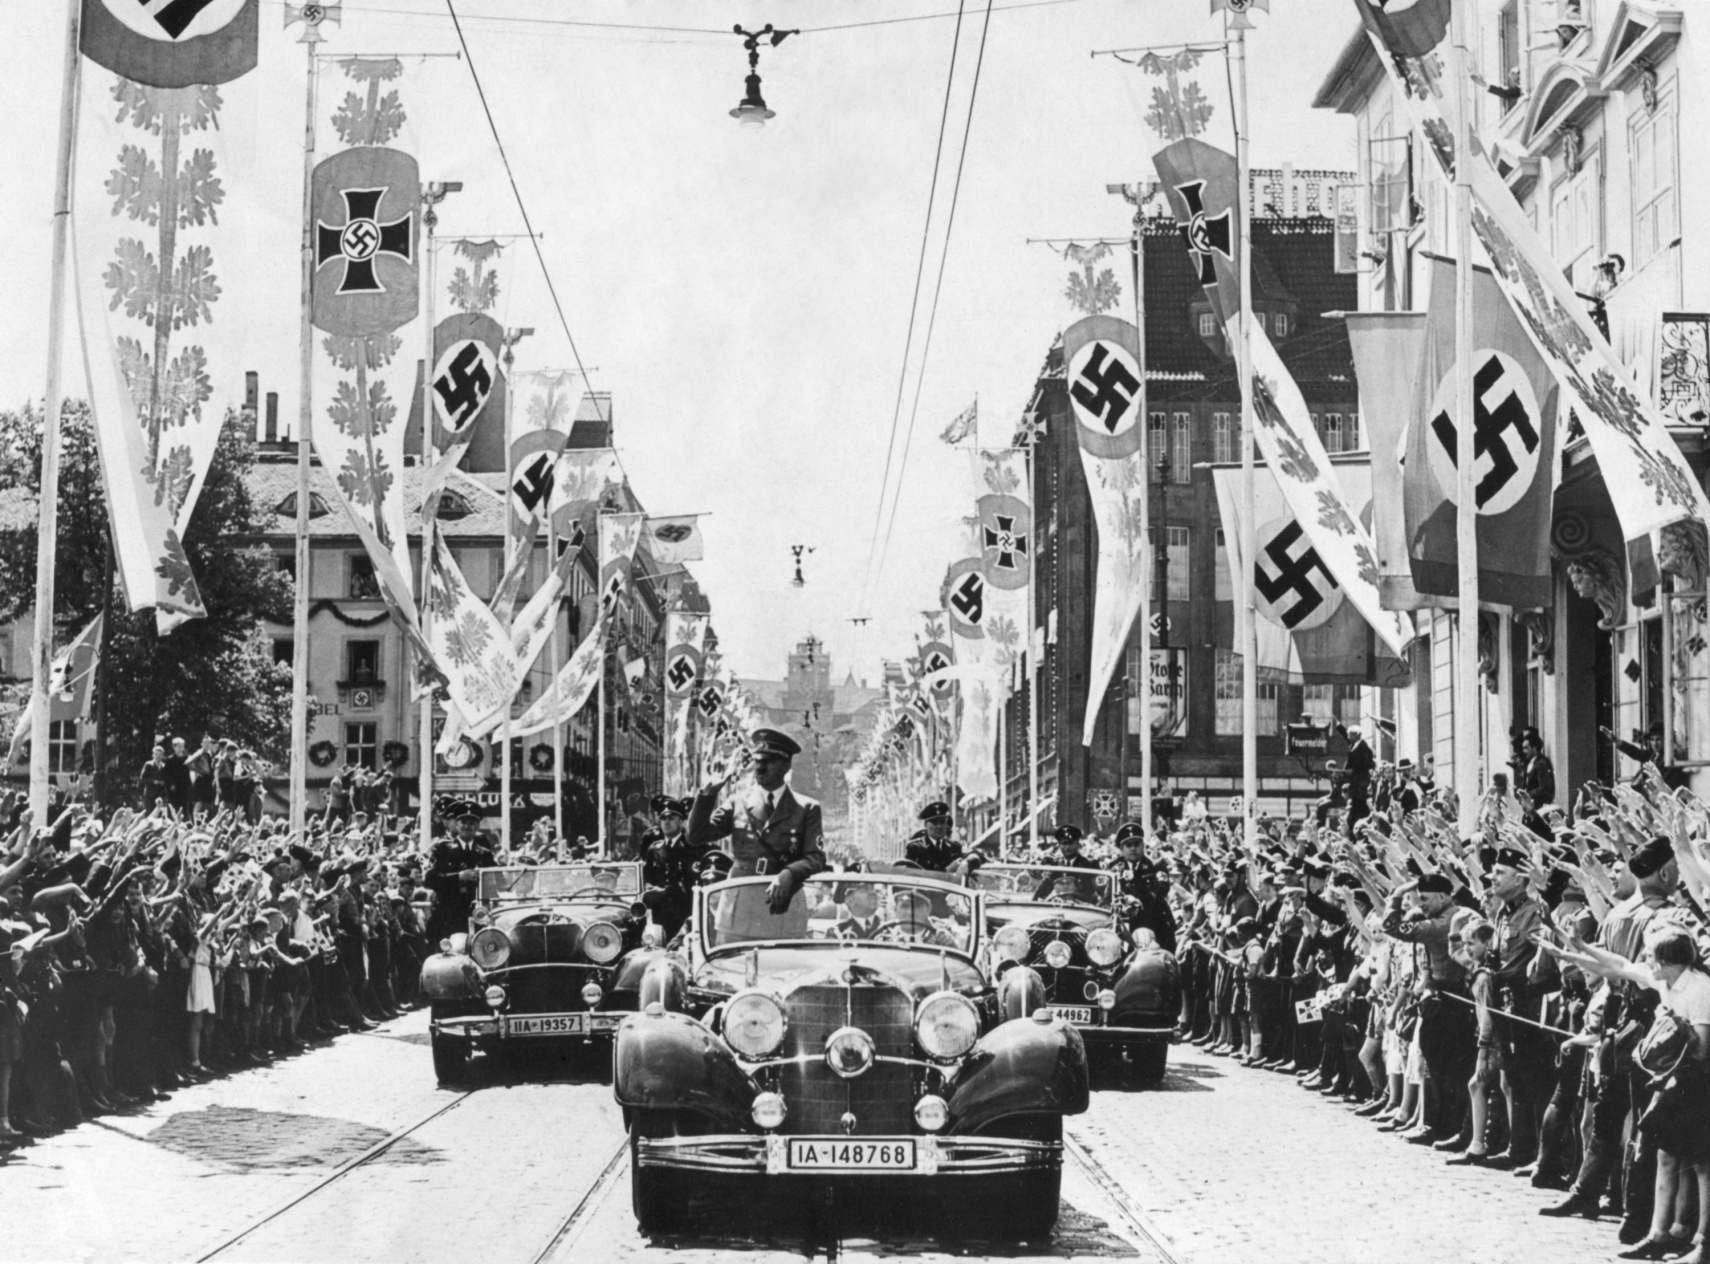 阿道夫·希特勒（Adolf Hitler）在遊行隊伍的前頭從他的車上向人群揮手致意。 街道上裝飾著各種萬字橫幅。 鈣。 1934-38 年。 希特勒選擇萬字符作為他們的標誌有一個方便但虛假的理由。 它在第二個千年被印度的雅利安游牧民族使用。 在納粹理論中，雅利安人有德國血統，希特勒得出結論，萬字符永遠是反猶太的。